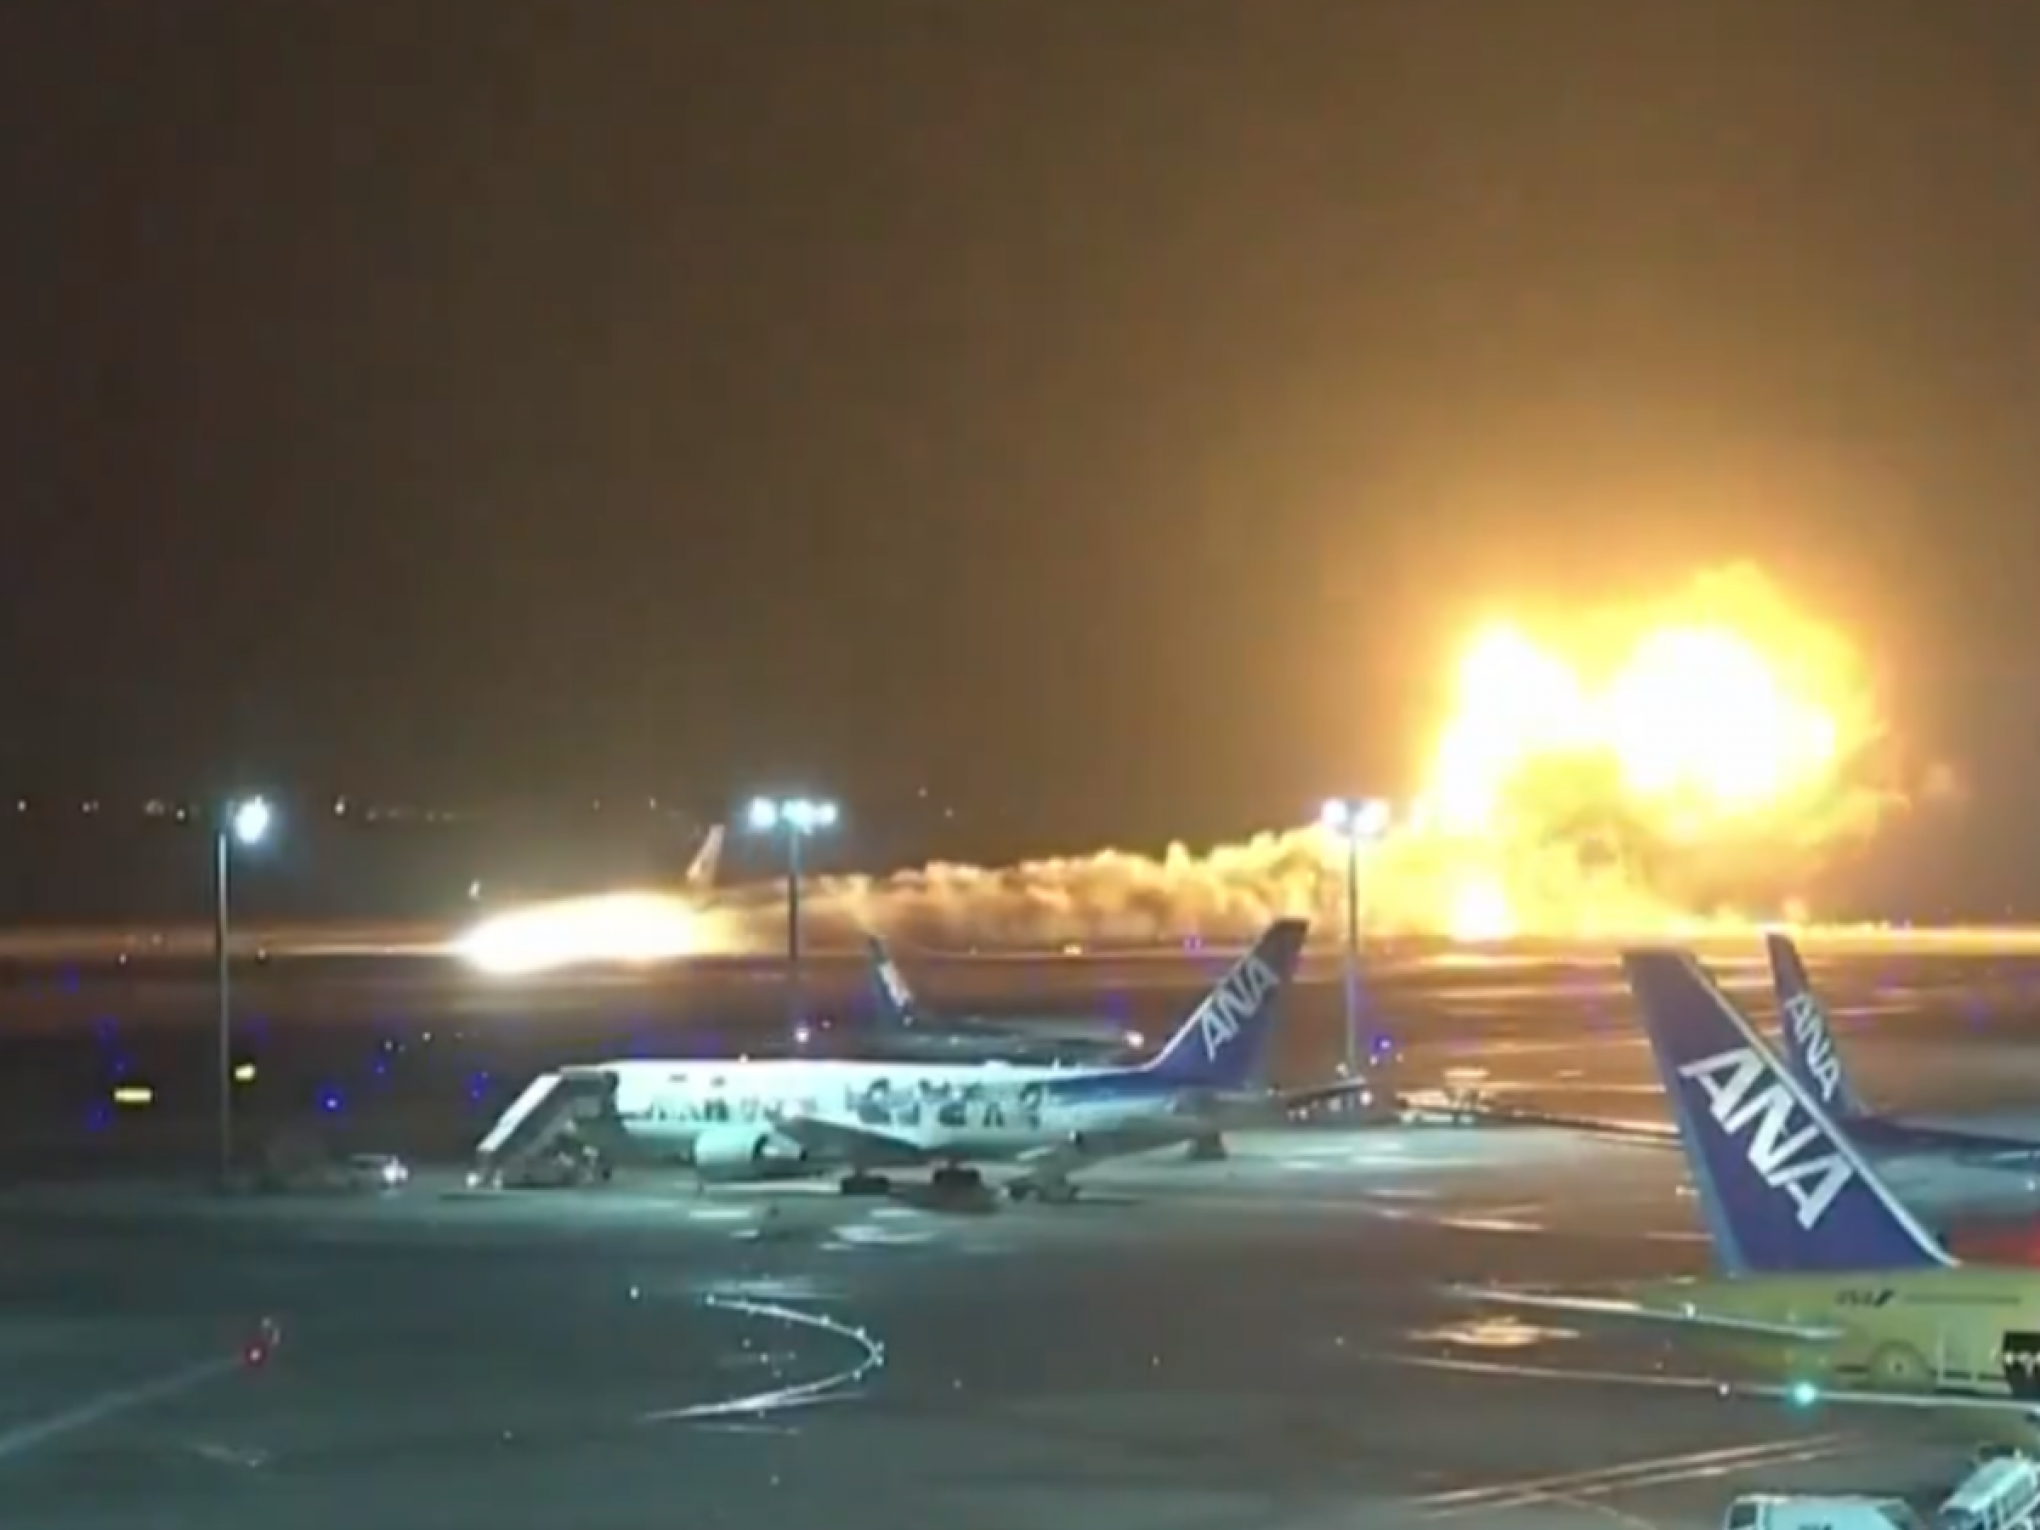 Empresa aérea diz que avião que colidiu em outro no Japão estava liberado para pousar; havia quase 400 passageiros